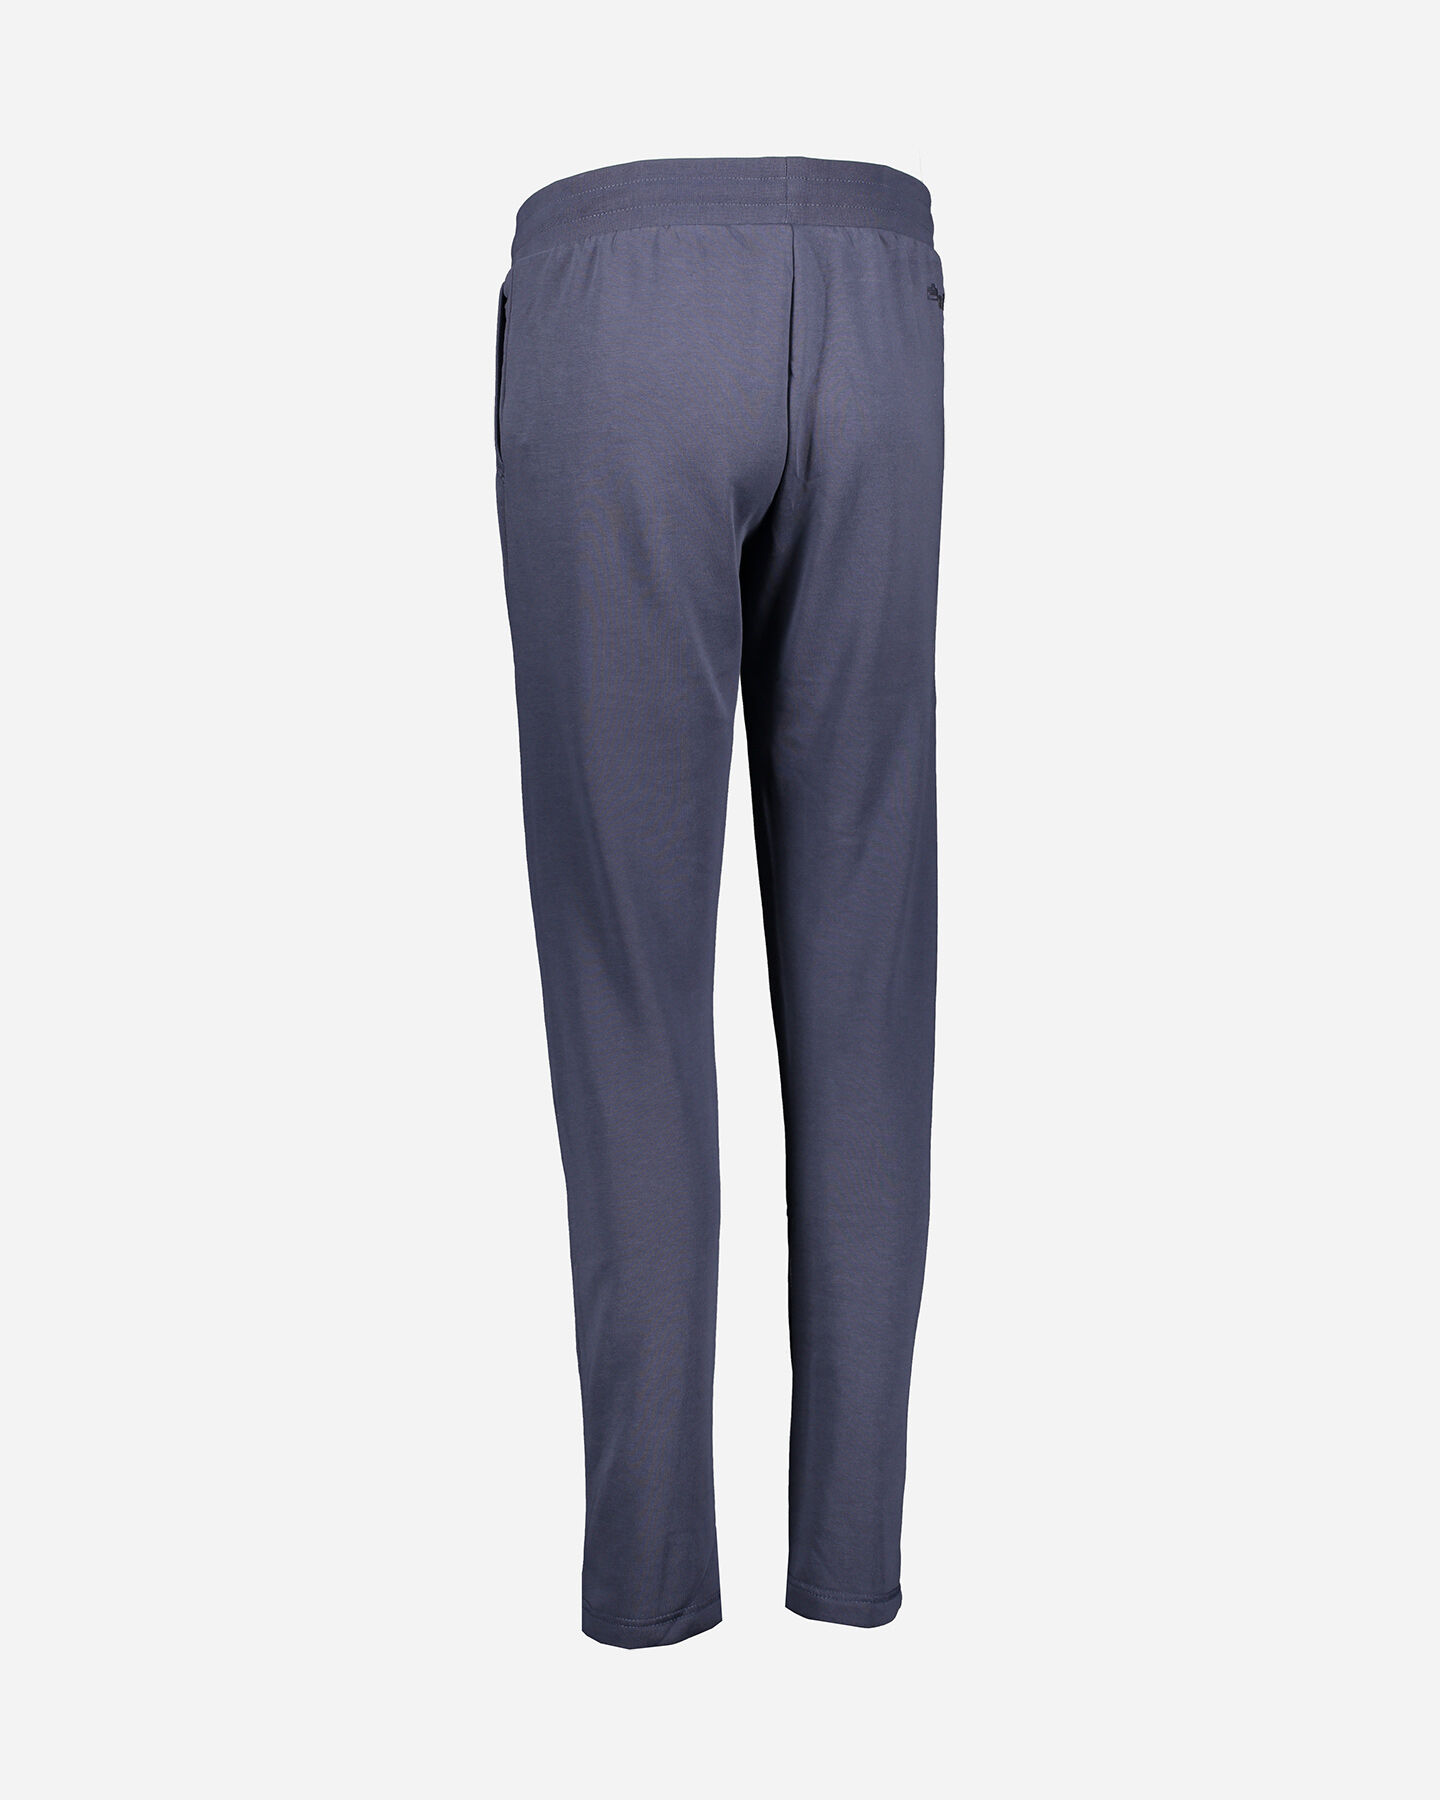  Pantalone ADMIRAL CLASSIC W S4080441|520|S scatto 2